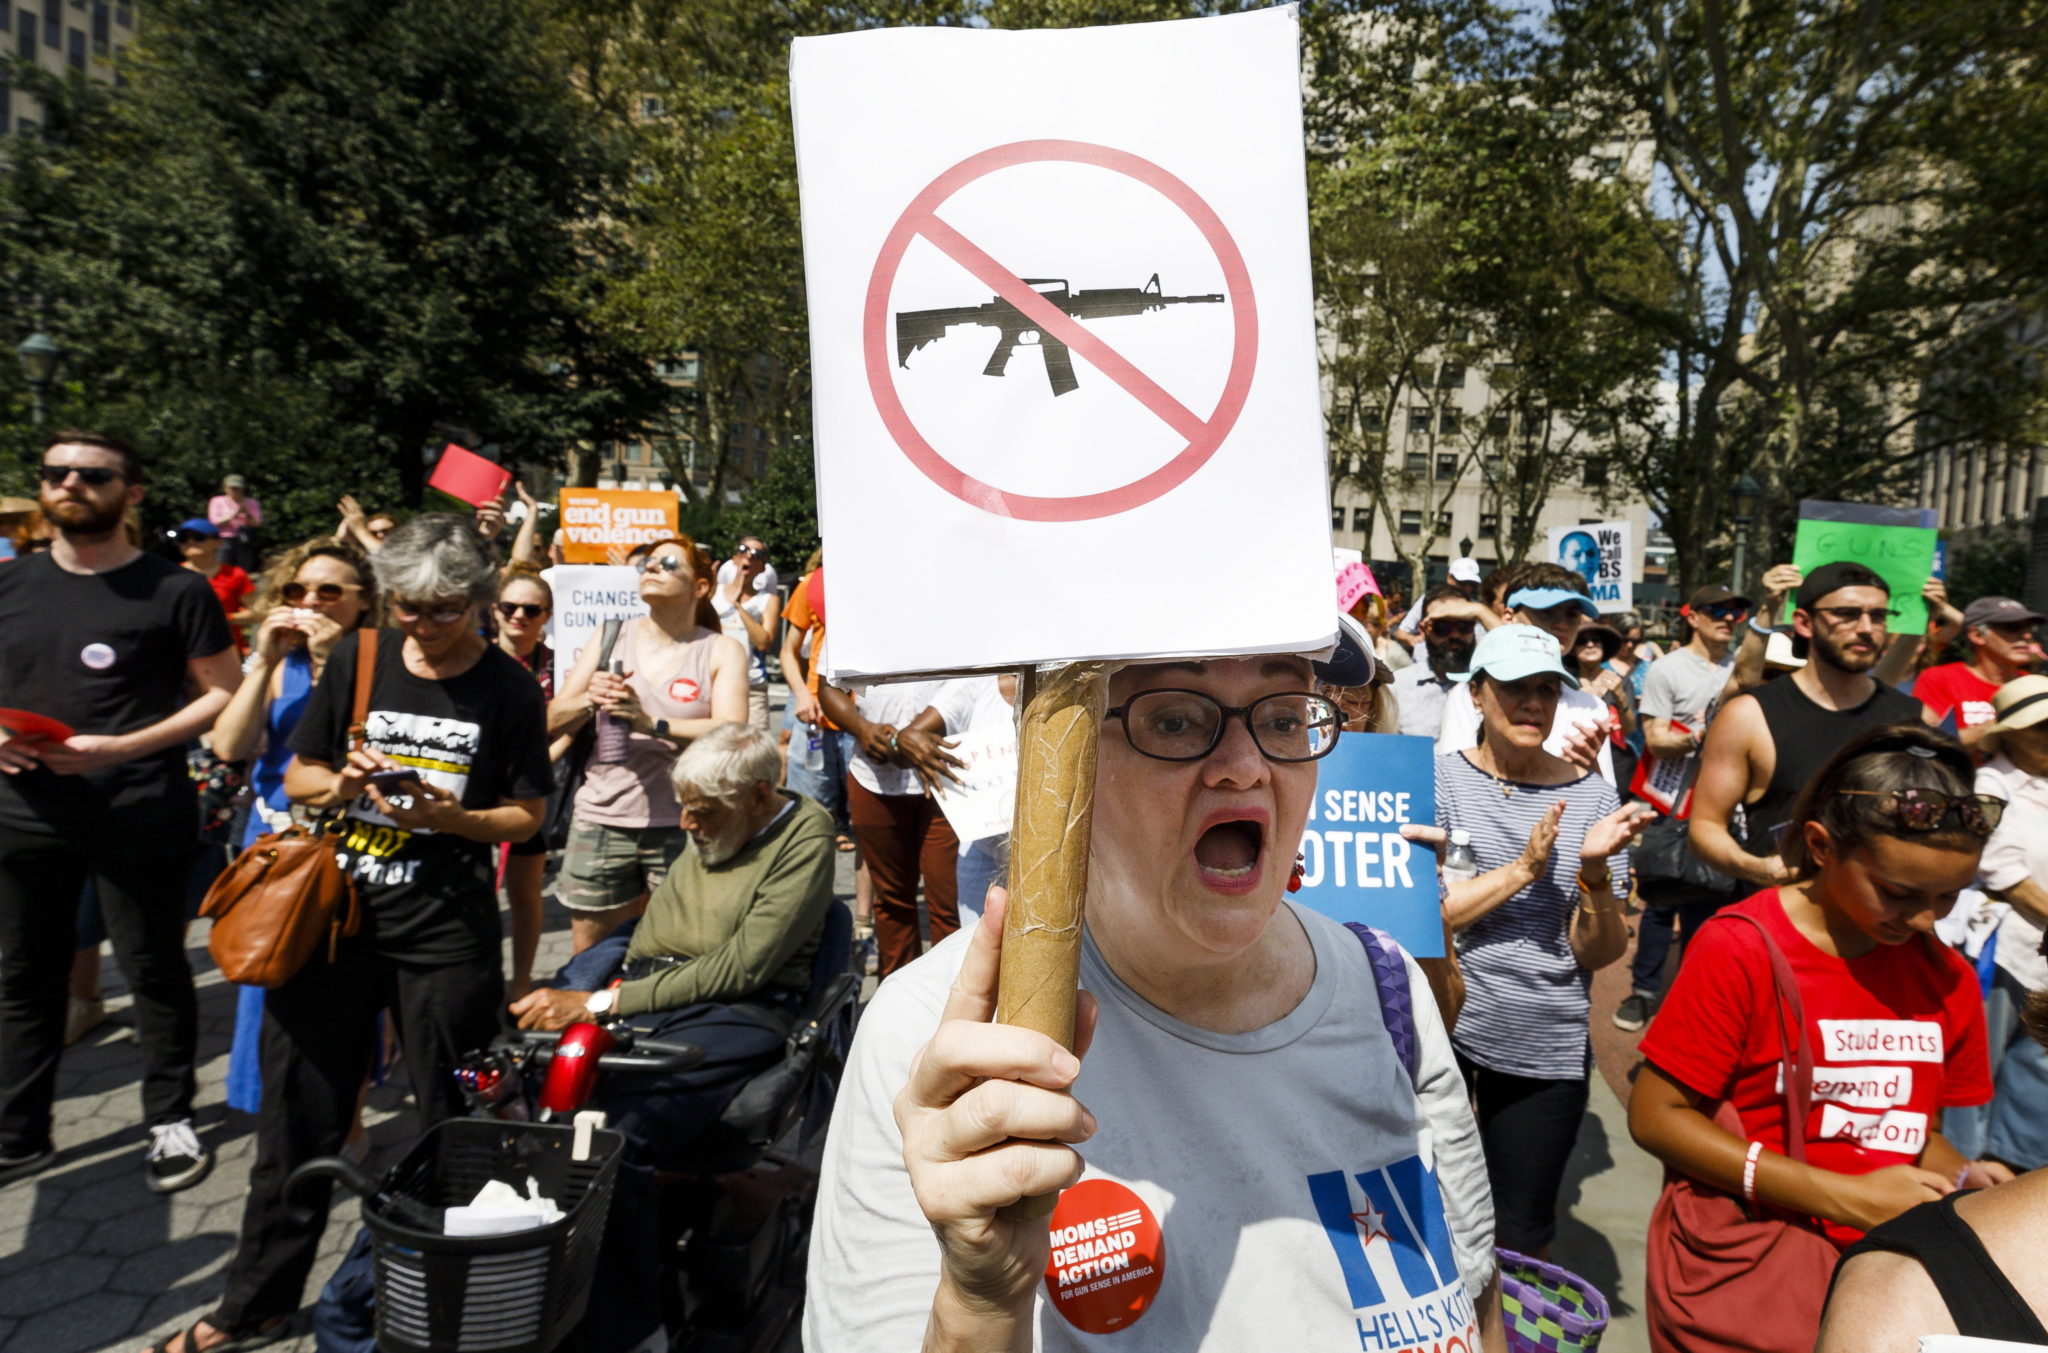 Nowy Jork, USA: demonstracja w celu ograniczenia prawa do posiadania broni, fot. JUSTIN LANE, PAP/EPA 